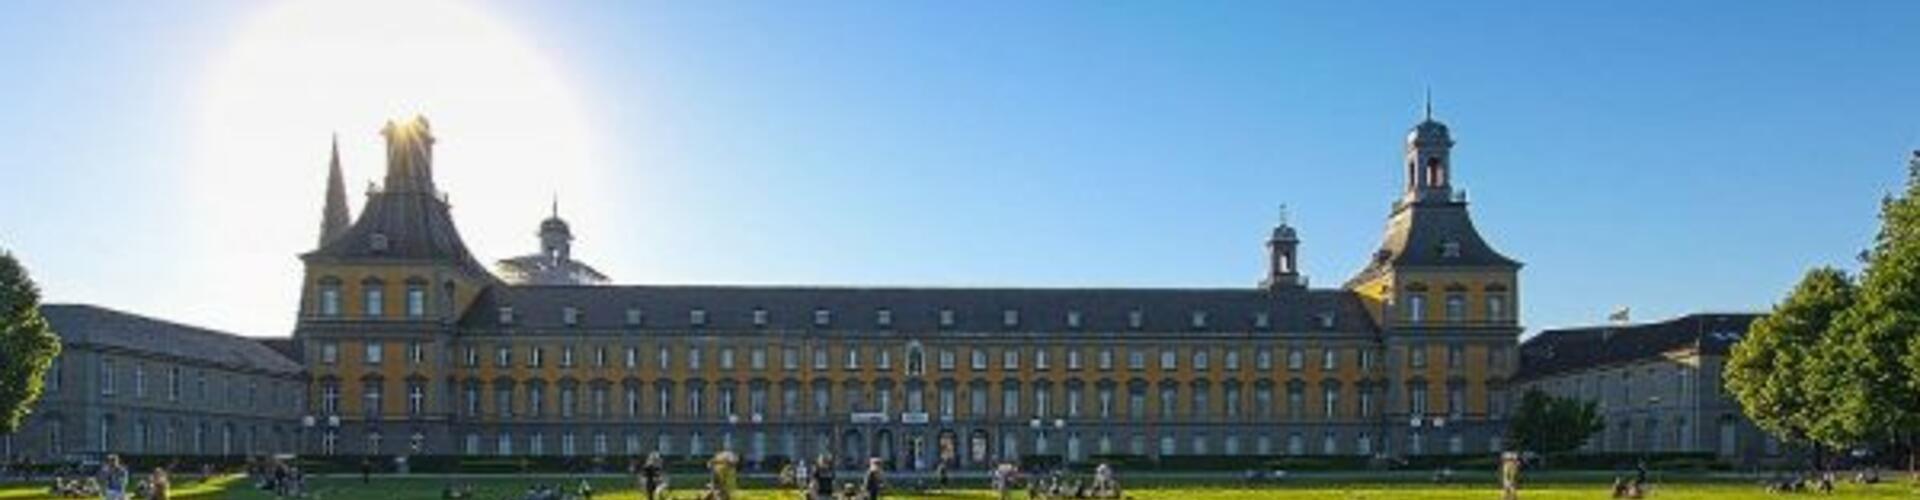 Hofgarten und Hofgebäude Campus Universität Bonn